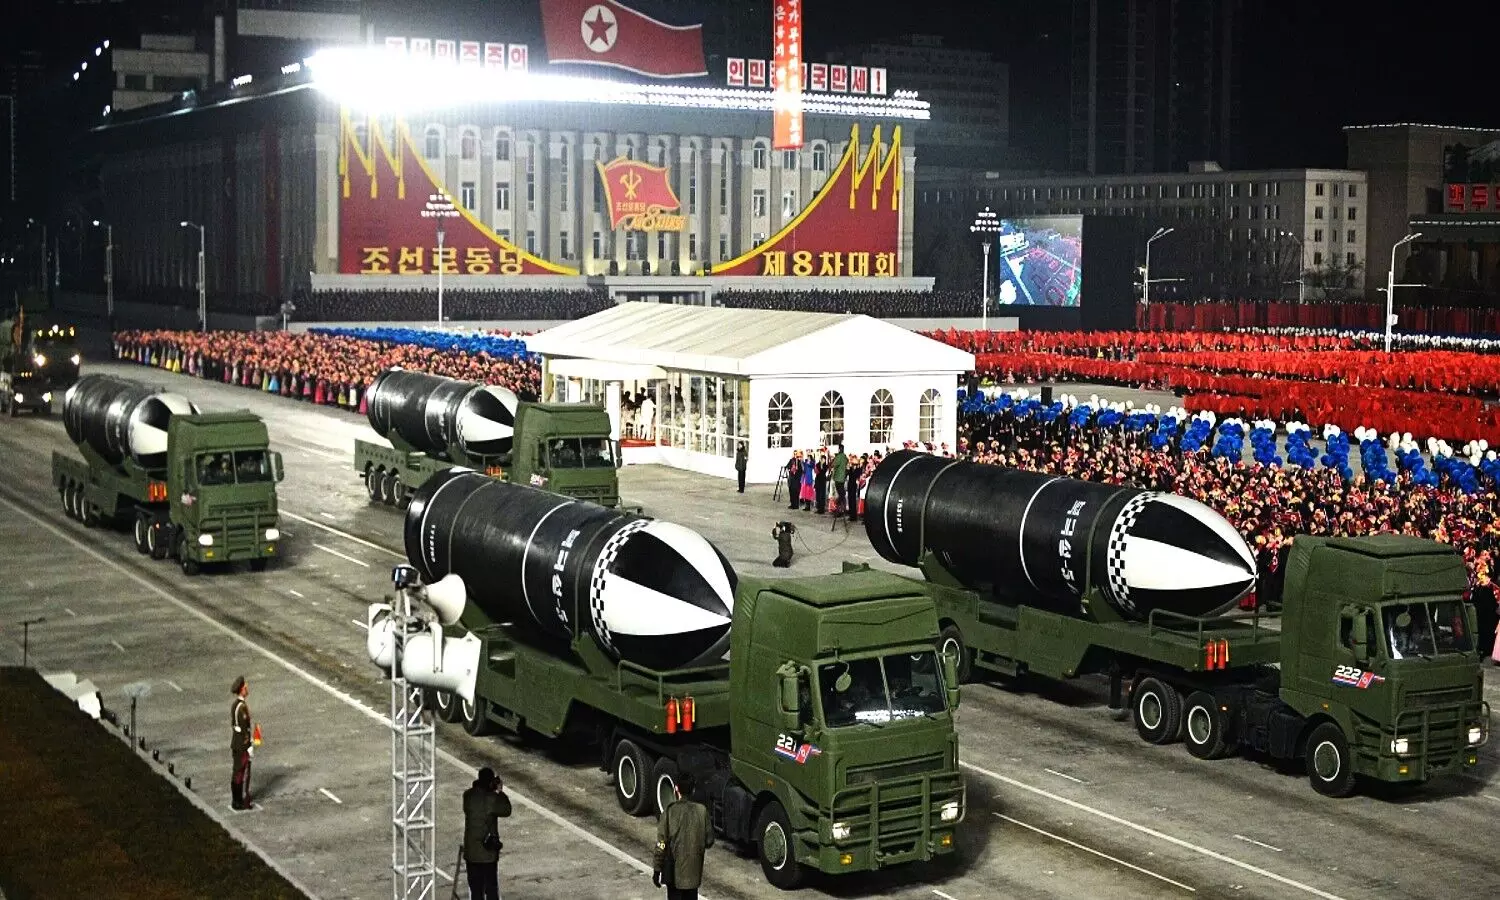 North Korea Test Missiles 2021 : बुरे हालातों से जूझ रहे नॉर्थ कोरिया ने किया मिसाइल परीक्षण, नहीं दिखा तानाशाह